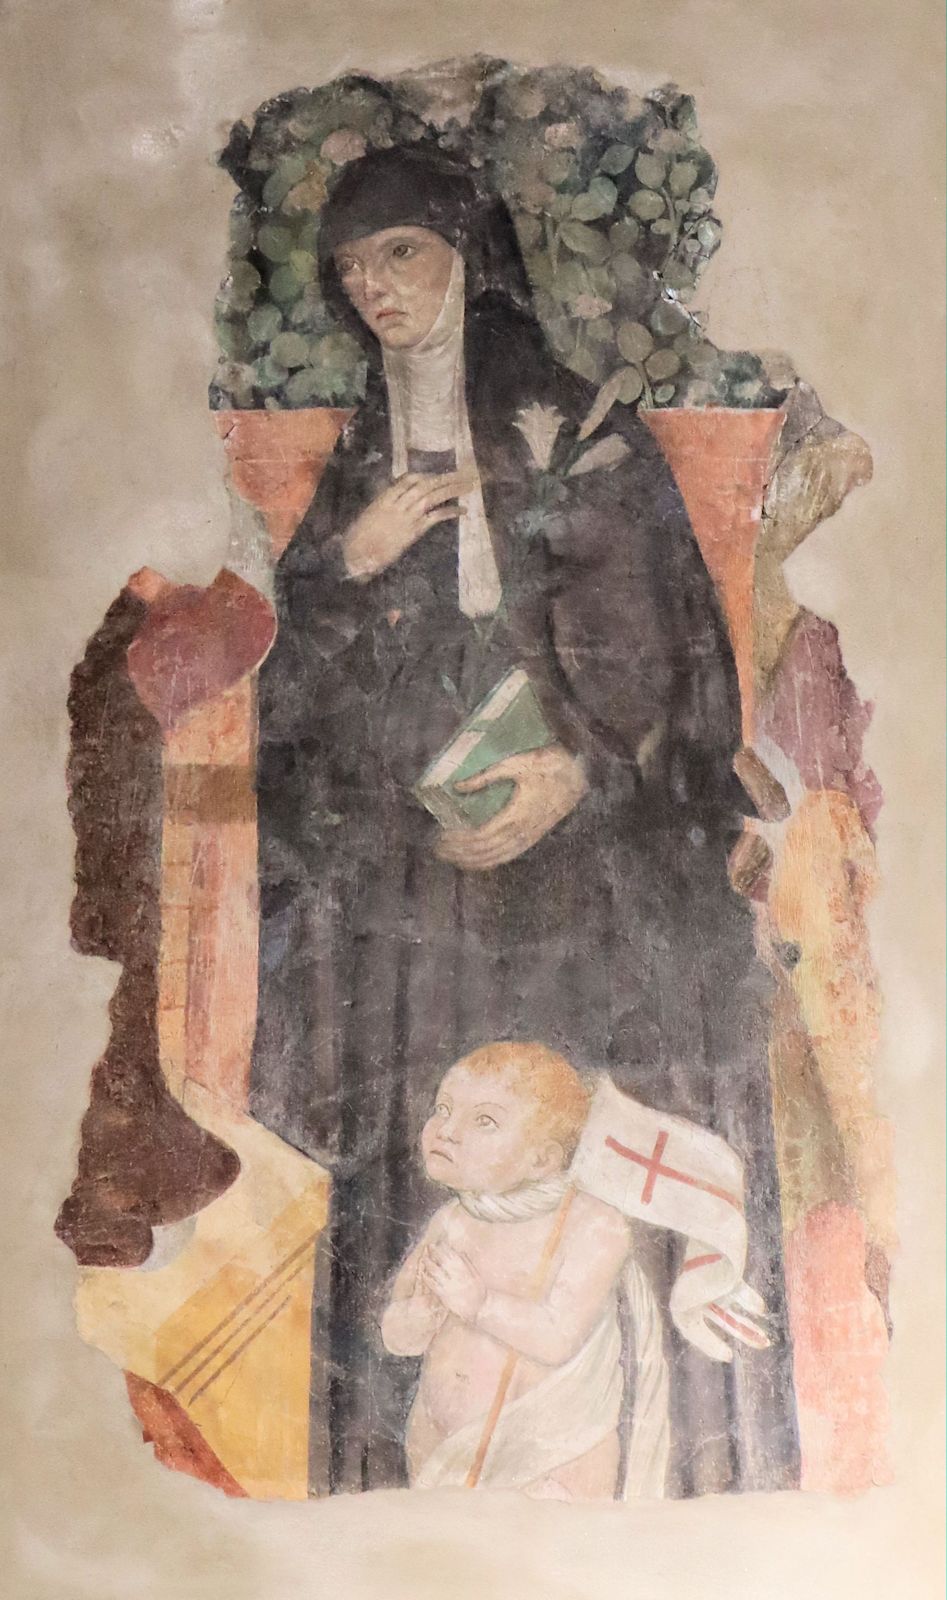 Altarbild in der Kirche San Barnaba in Mantua